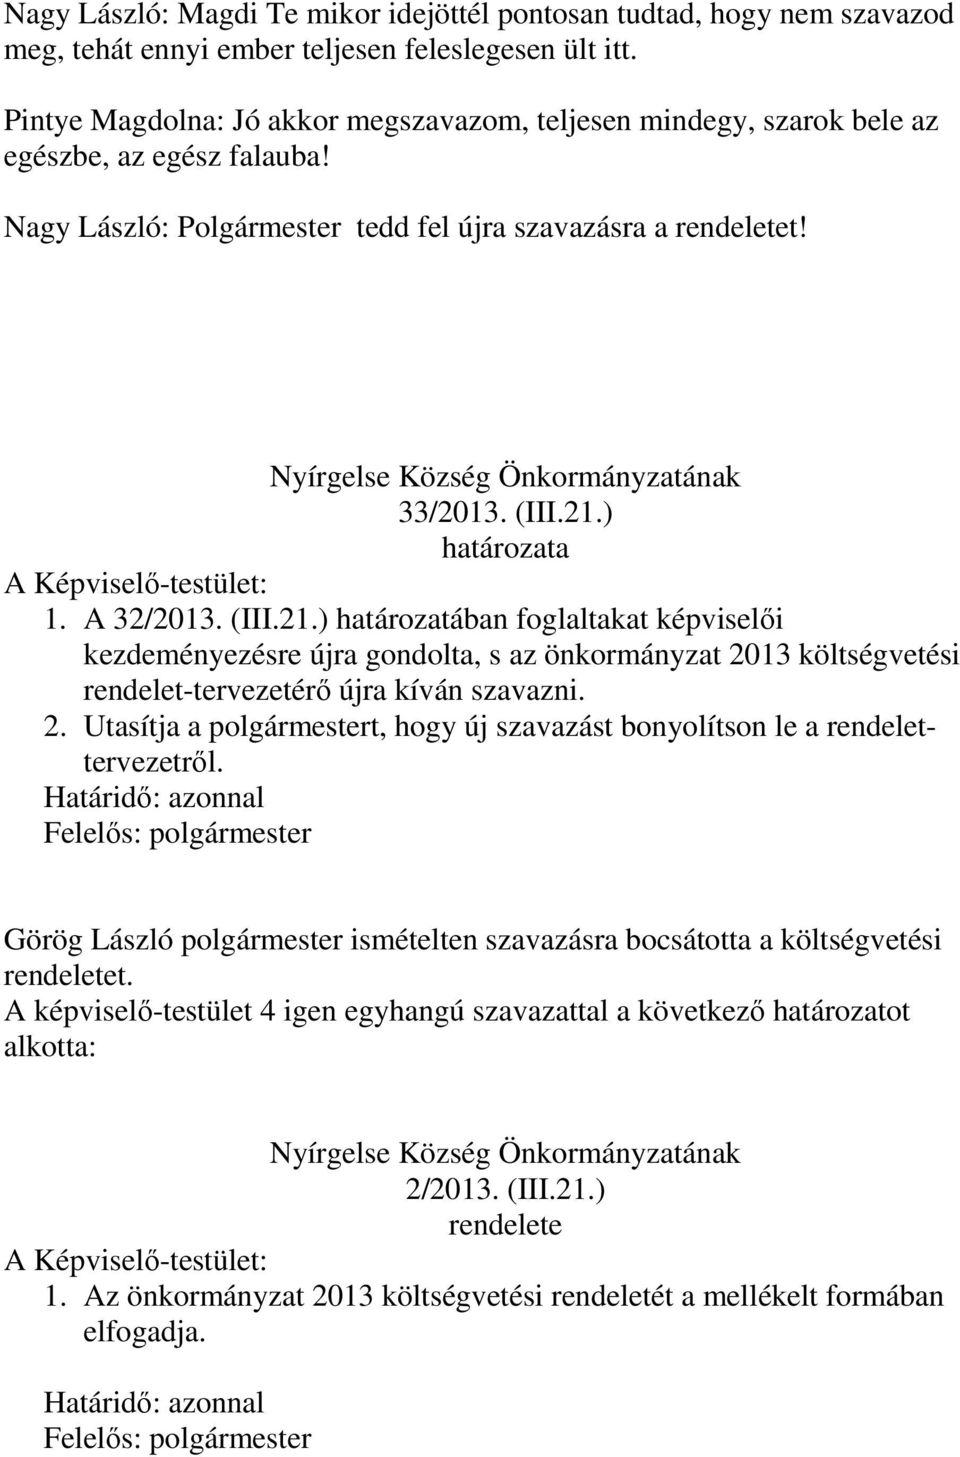 Nyírgelse Község Önkormányzatának 33/2013. (III.21.) határozata 1. A 32/2013. (III.21.) határozatában foglaltakat képviselői kezdeményezésre újra gondolta, s az önkormányzat 2013 költségvetési rendelet-tervezetérő újra kíván szavazni.